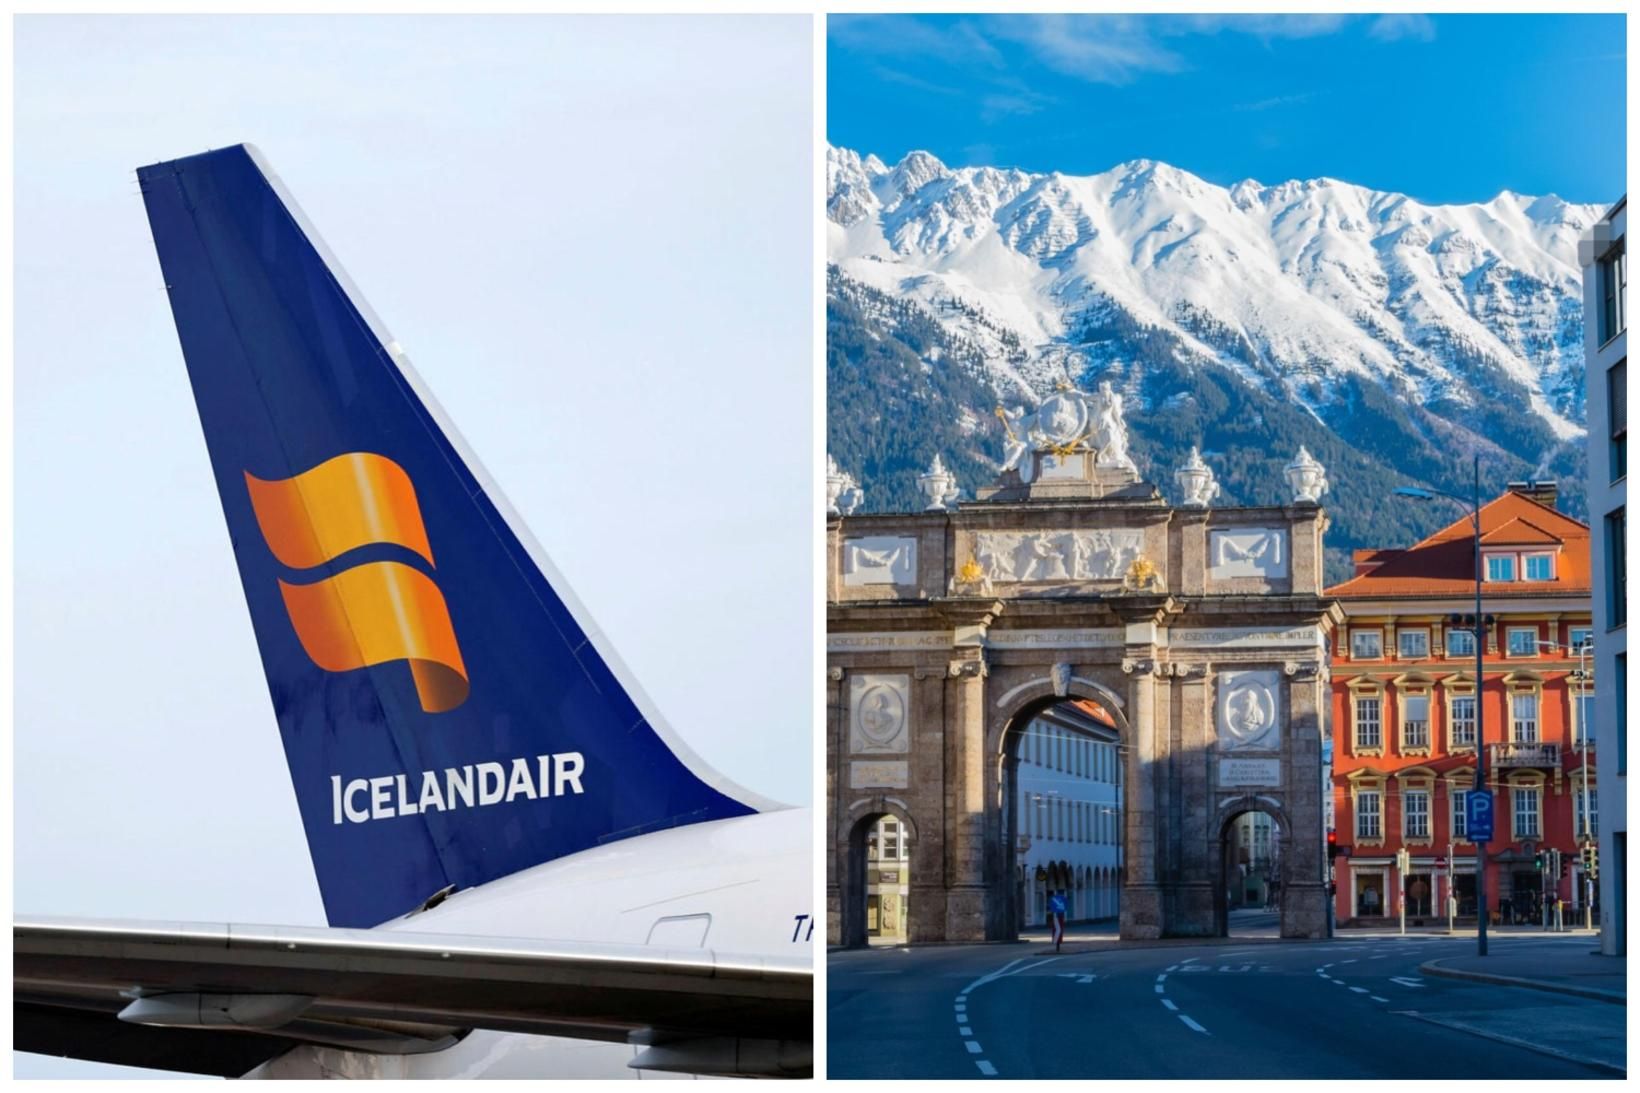 Skíðaparadísin Innsbruck er nýr áfangastaður Icelandair.